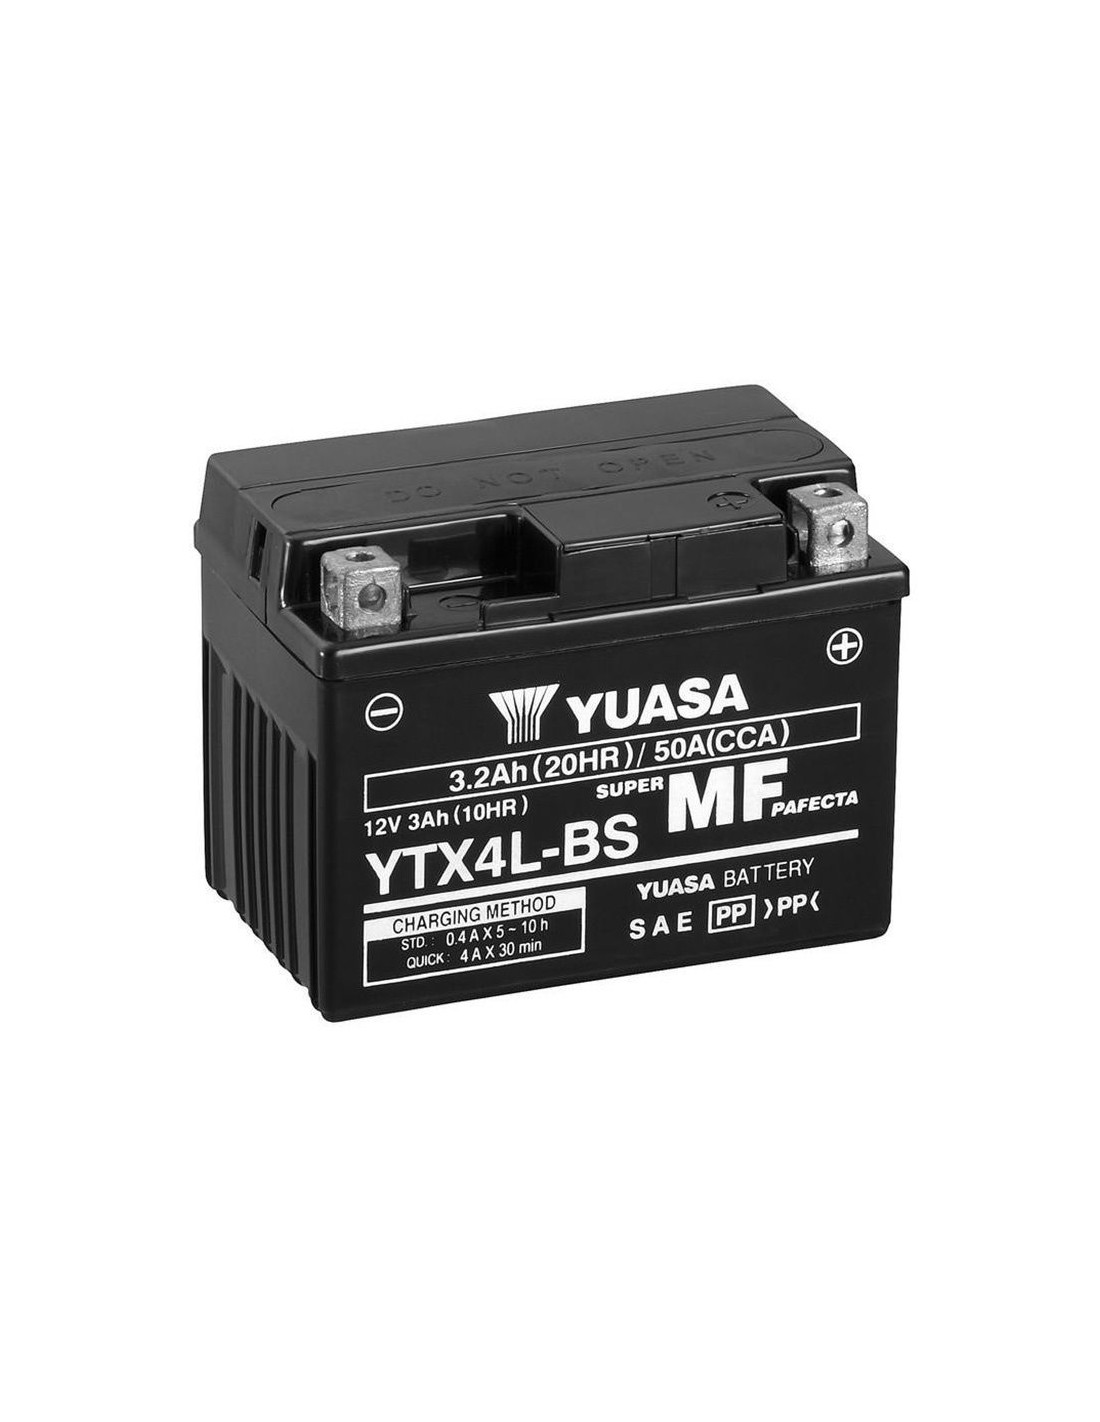 Comprar batería Yuasa YTX4L-BS | Compralubricantes.com